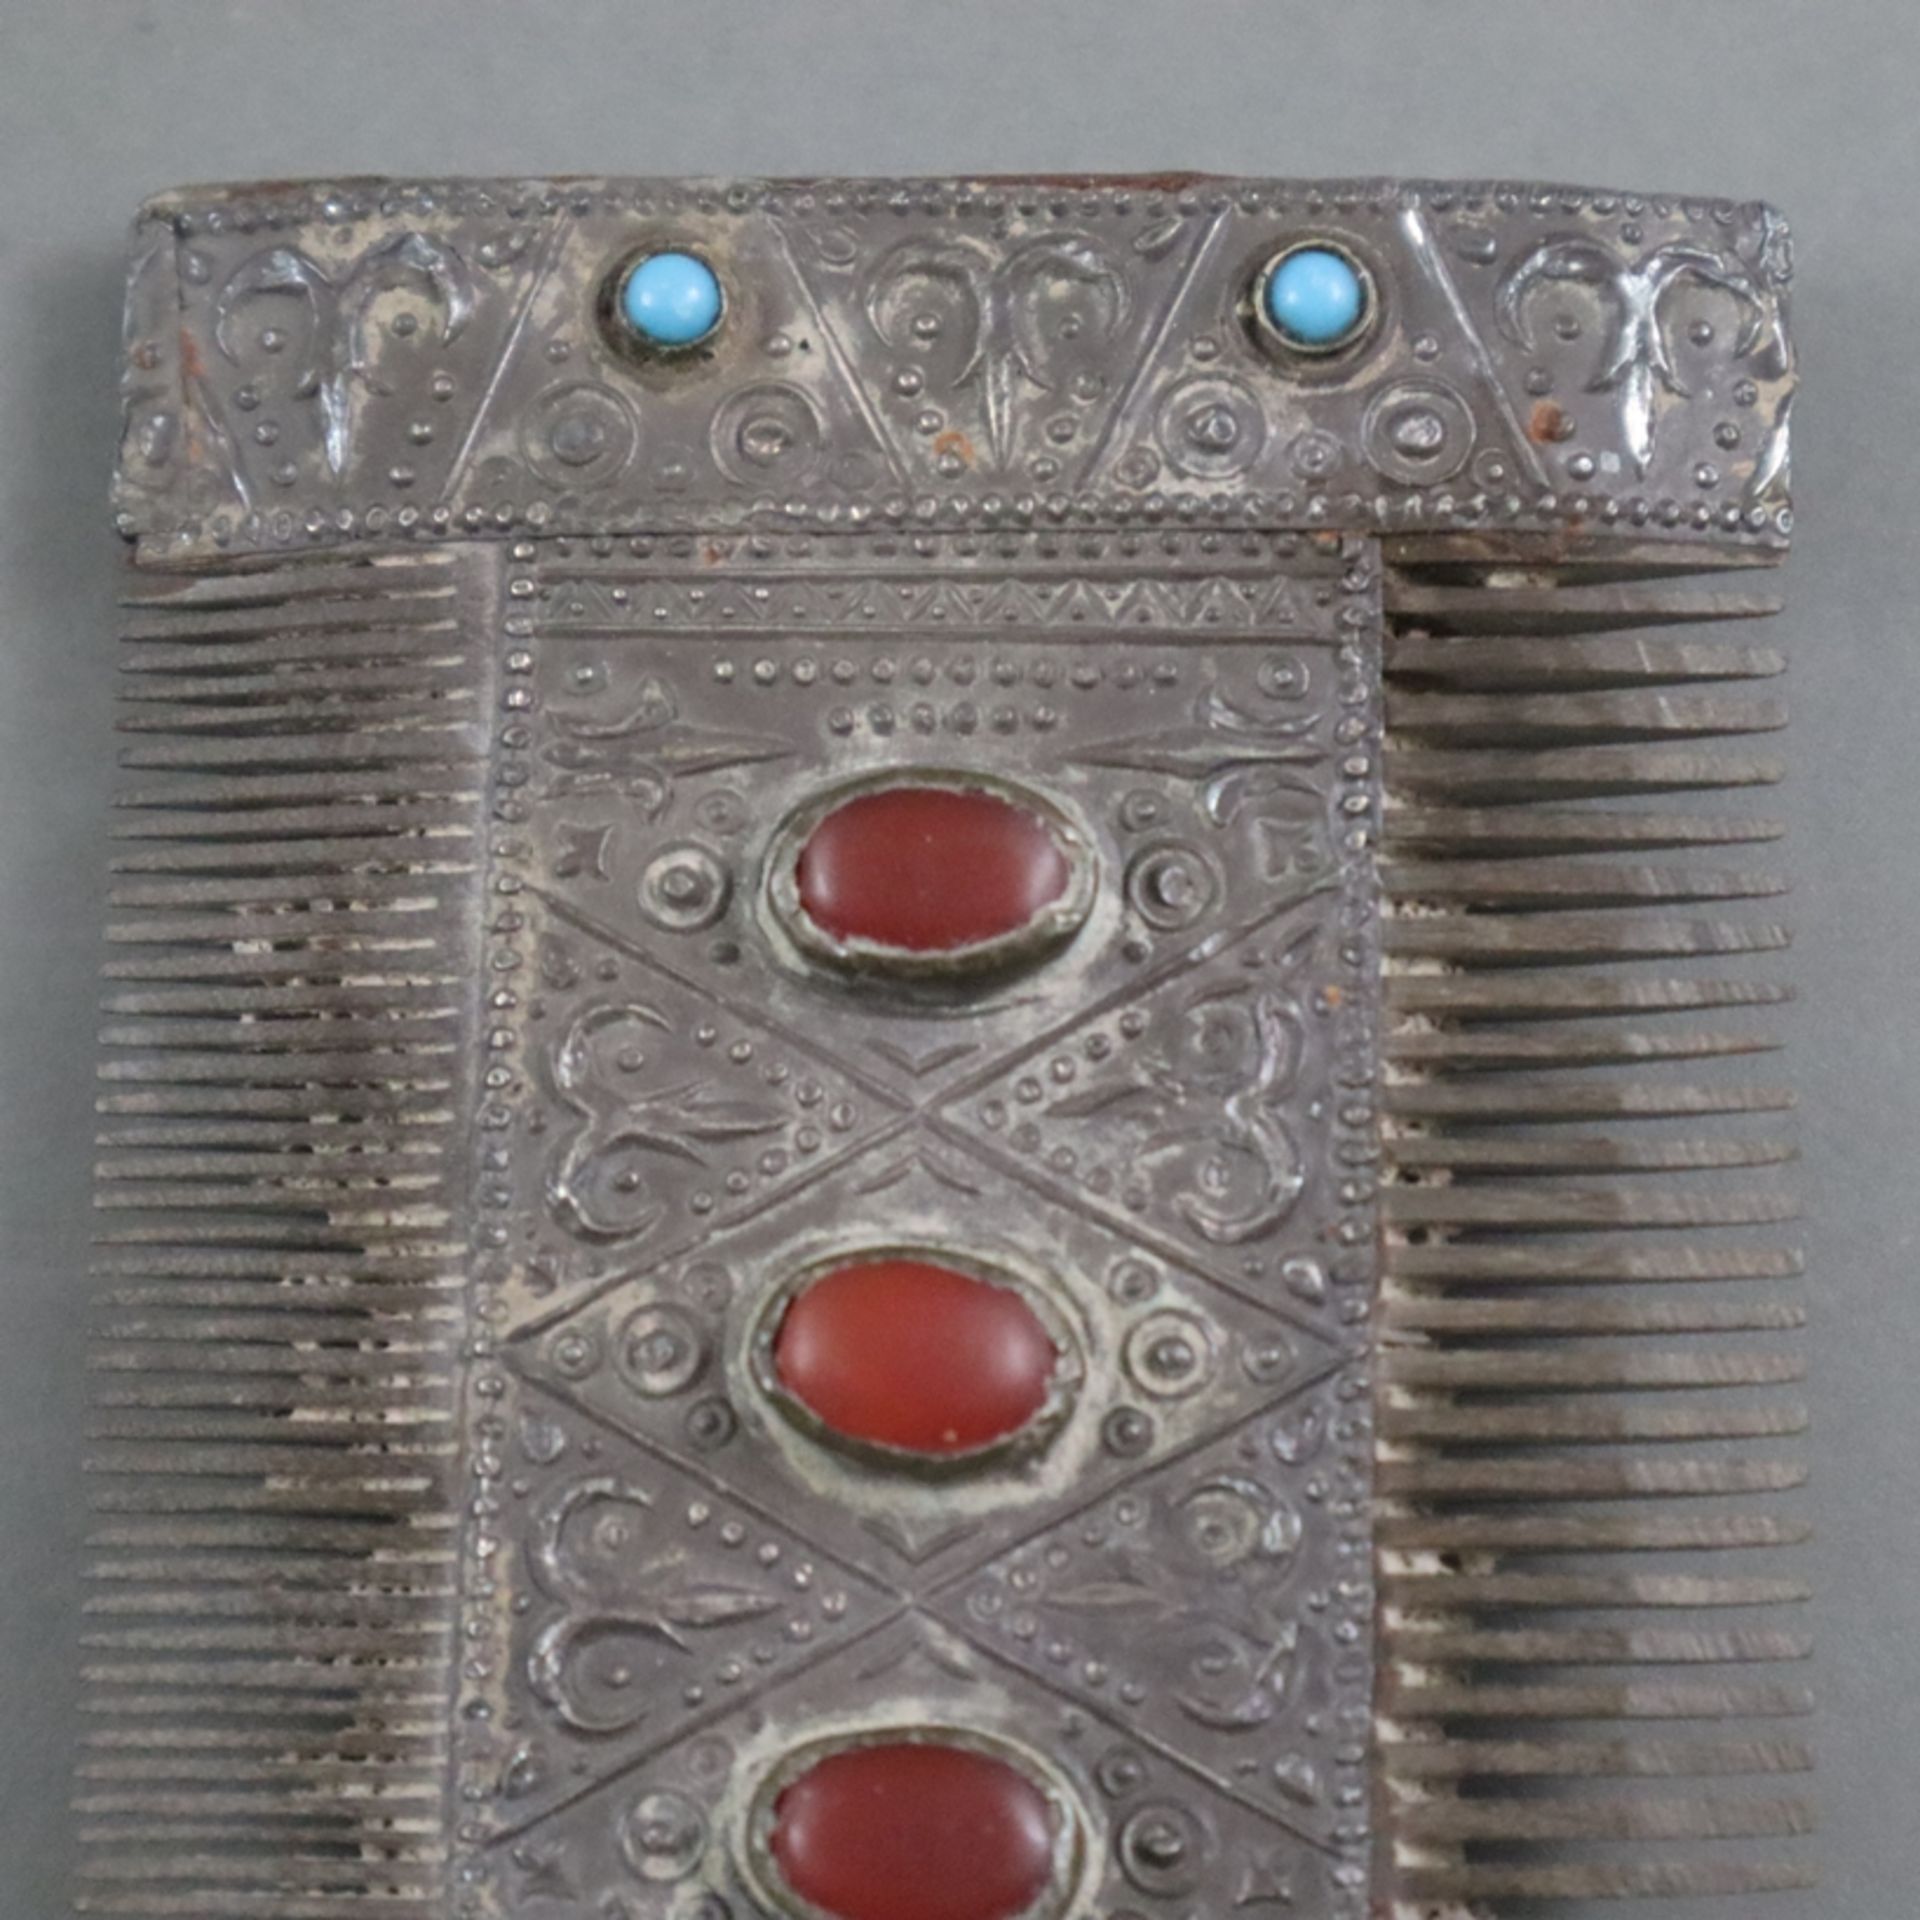 Kamm - Turkmenistan, 19./20. Jh., silberner Kamm mit Reliefdekor sowie zwei Reihen fein geschnitten - Bild 3 aus 5